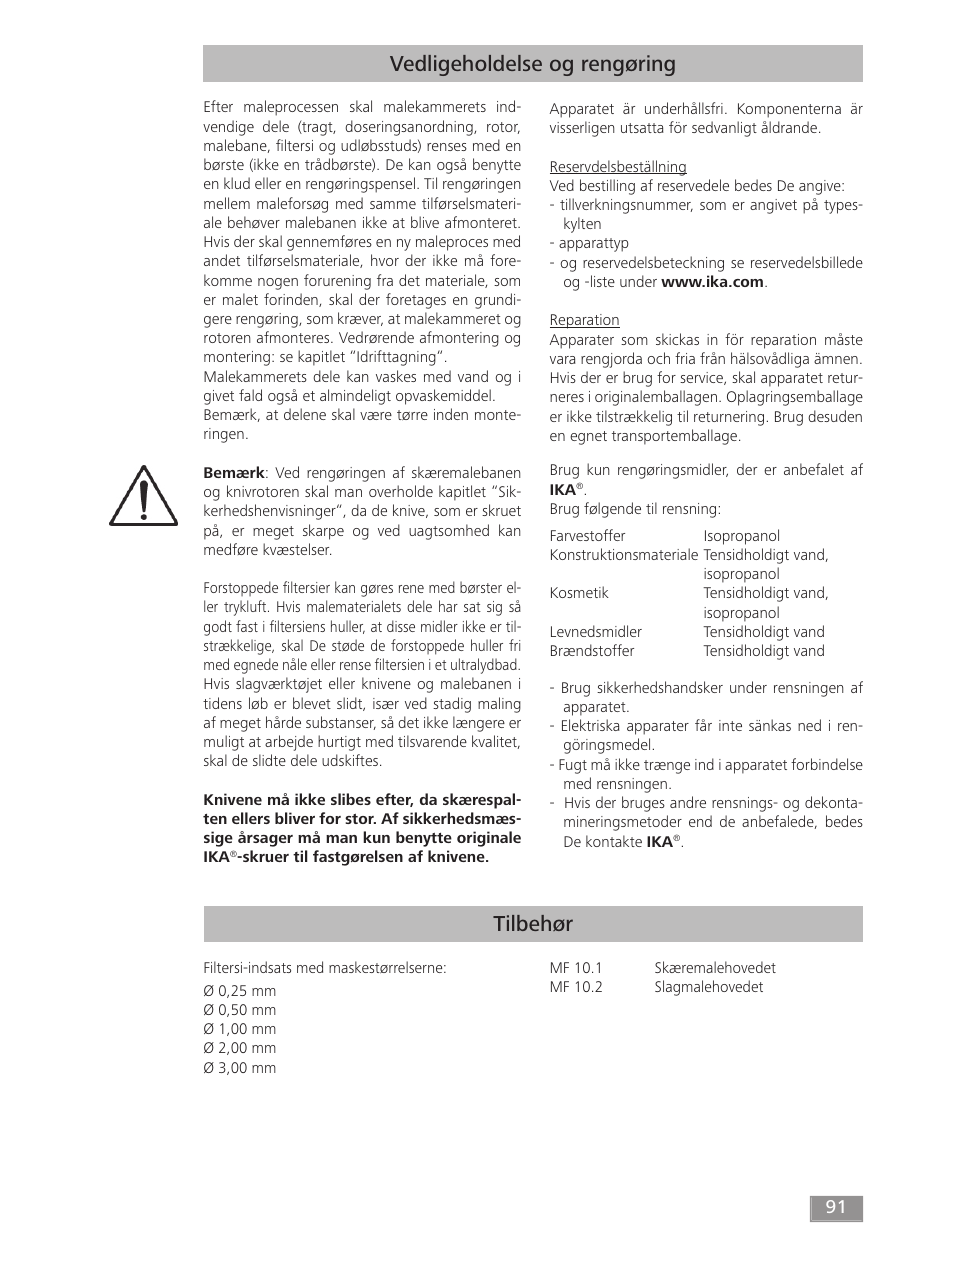 Tilbehør, Vedligeholdelse og rengøring | IKA MF 10 basic User Manual | Page 91 / 140